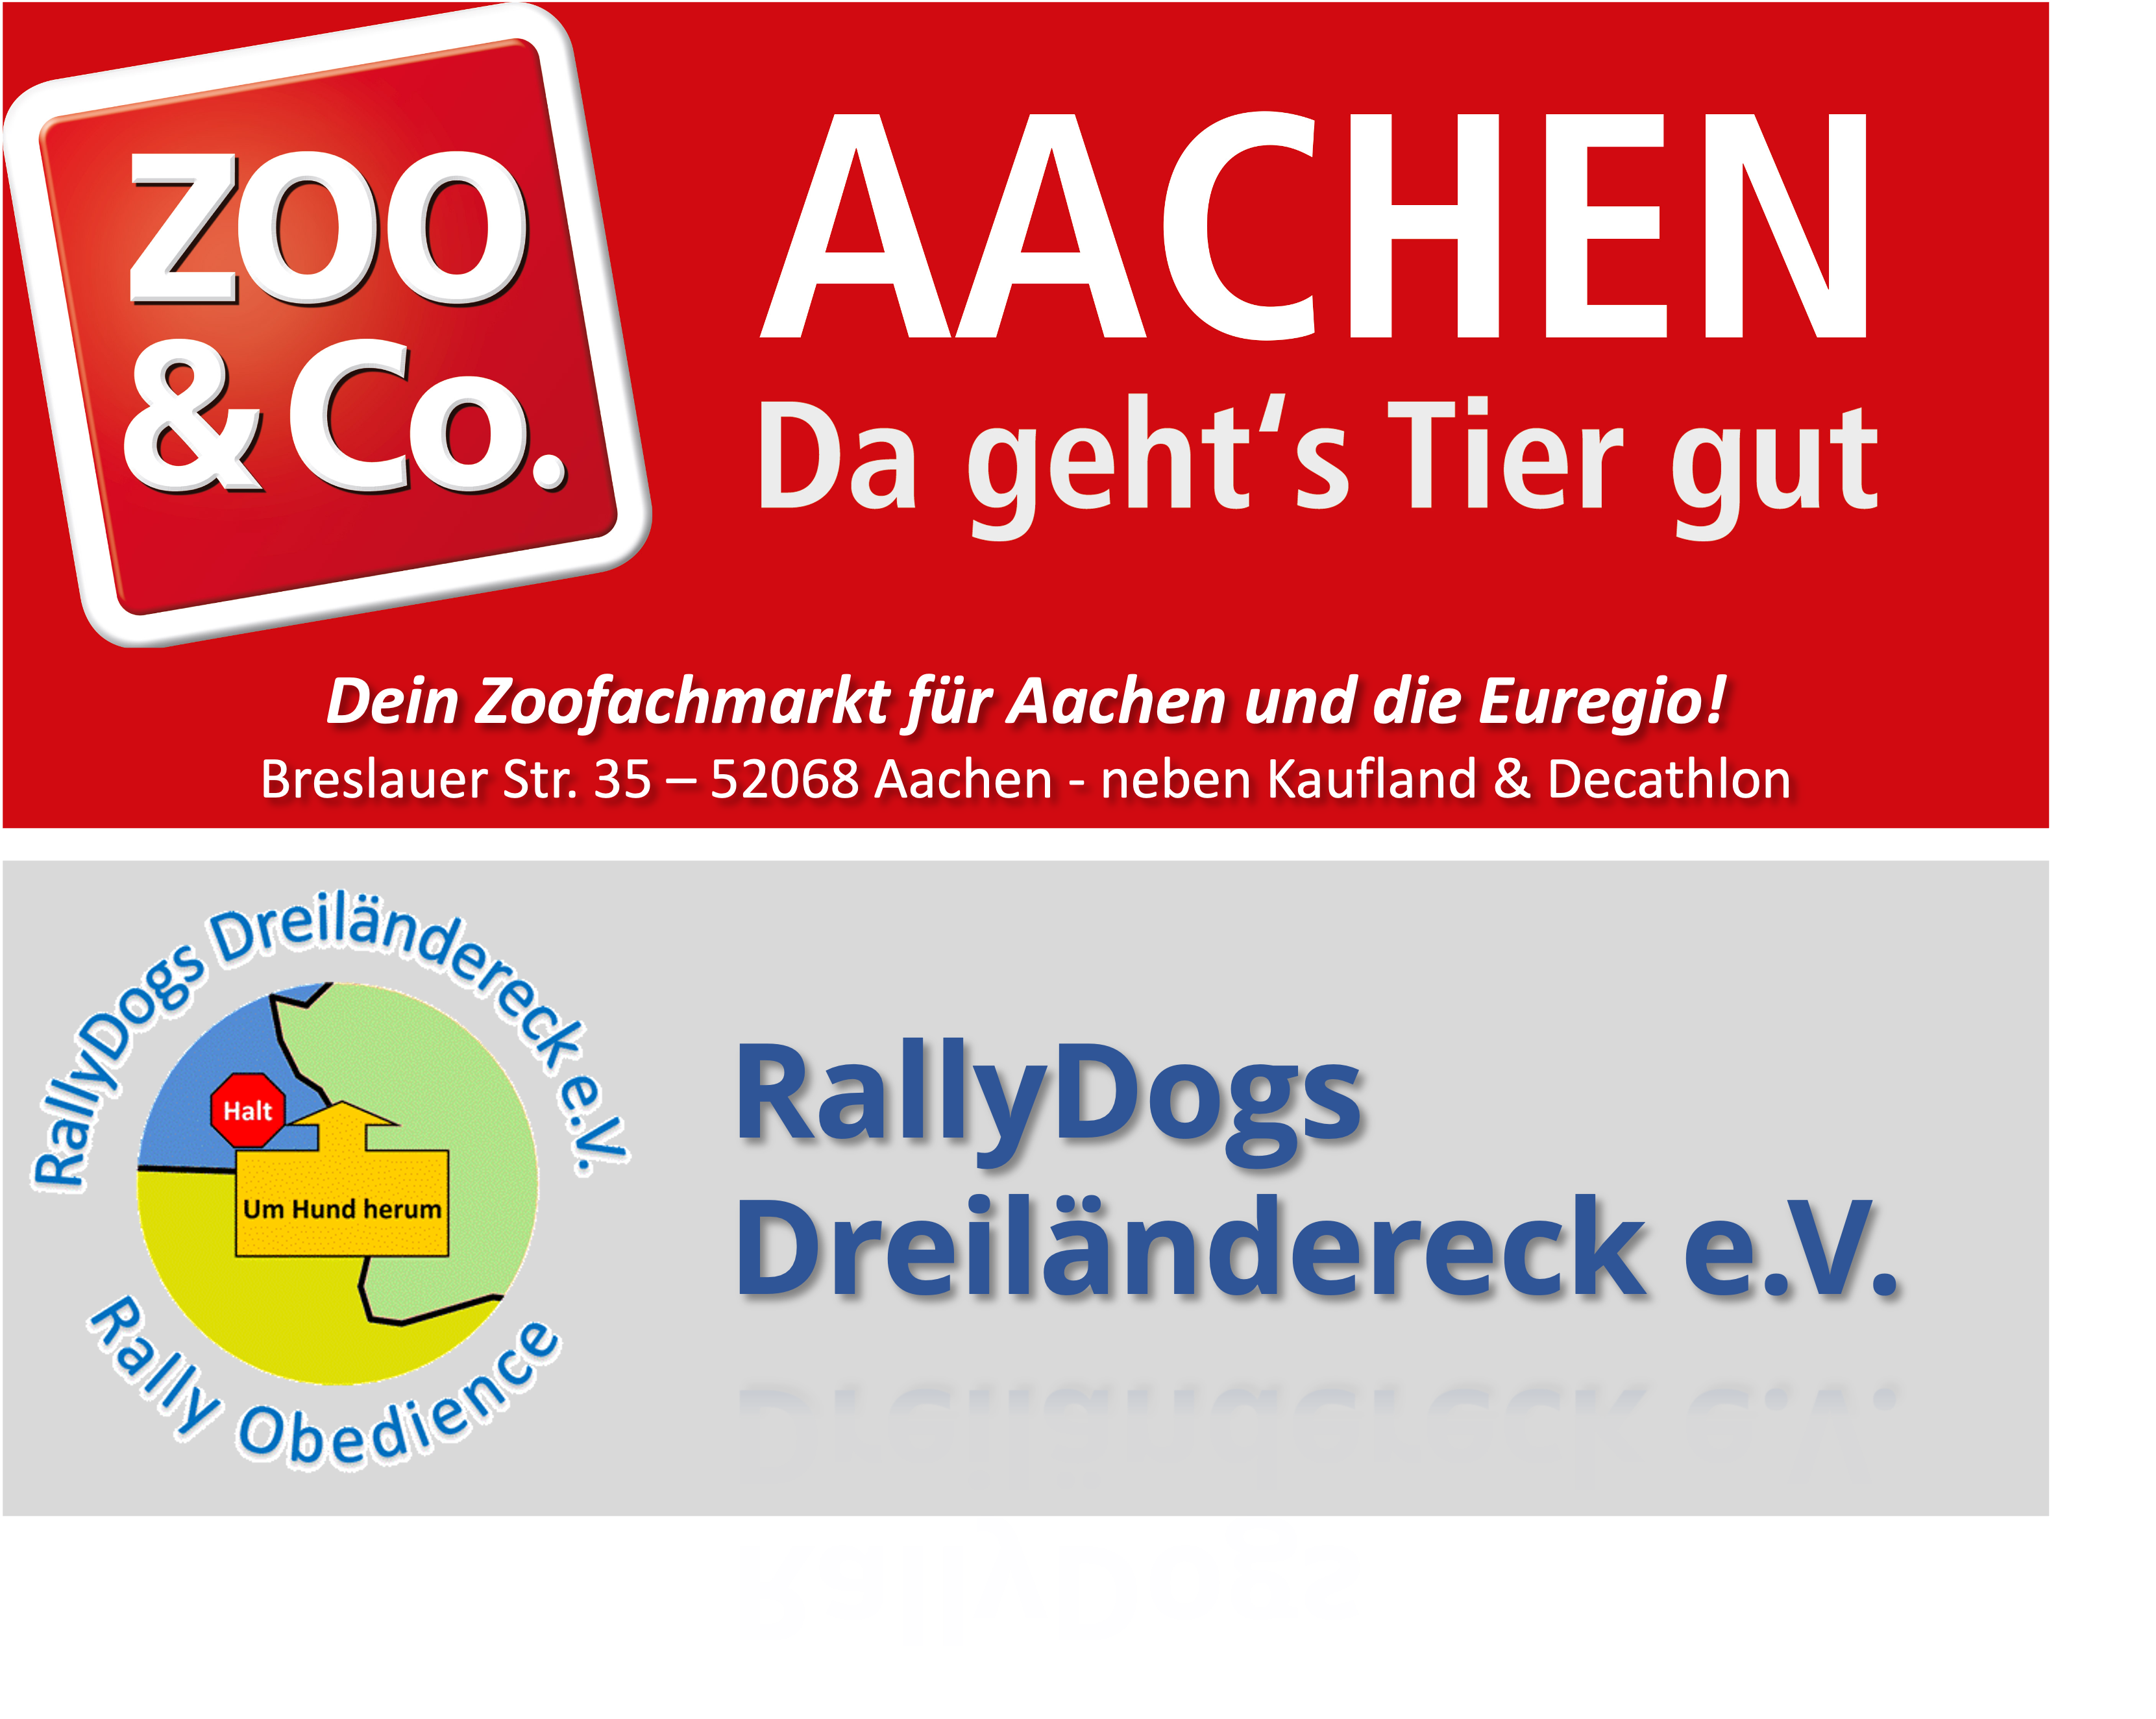 ZOO & Co. Aachen und RallyDogs Dreiländereck e.V.